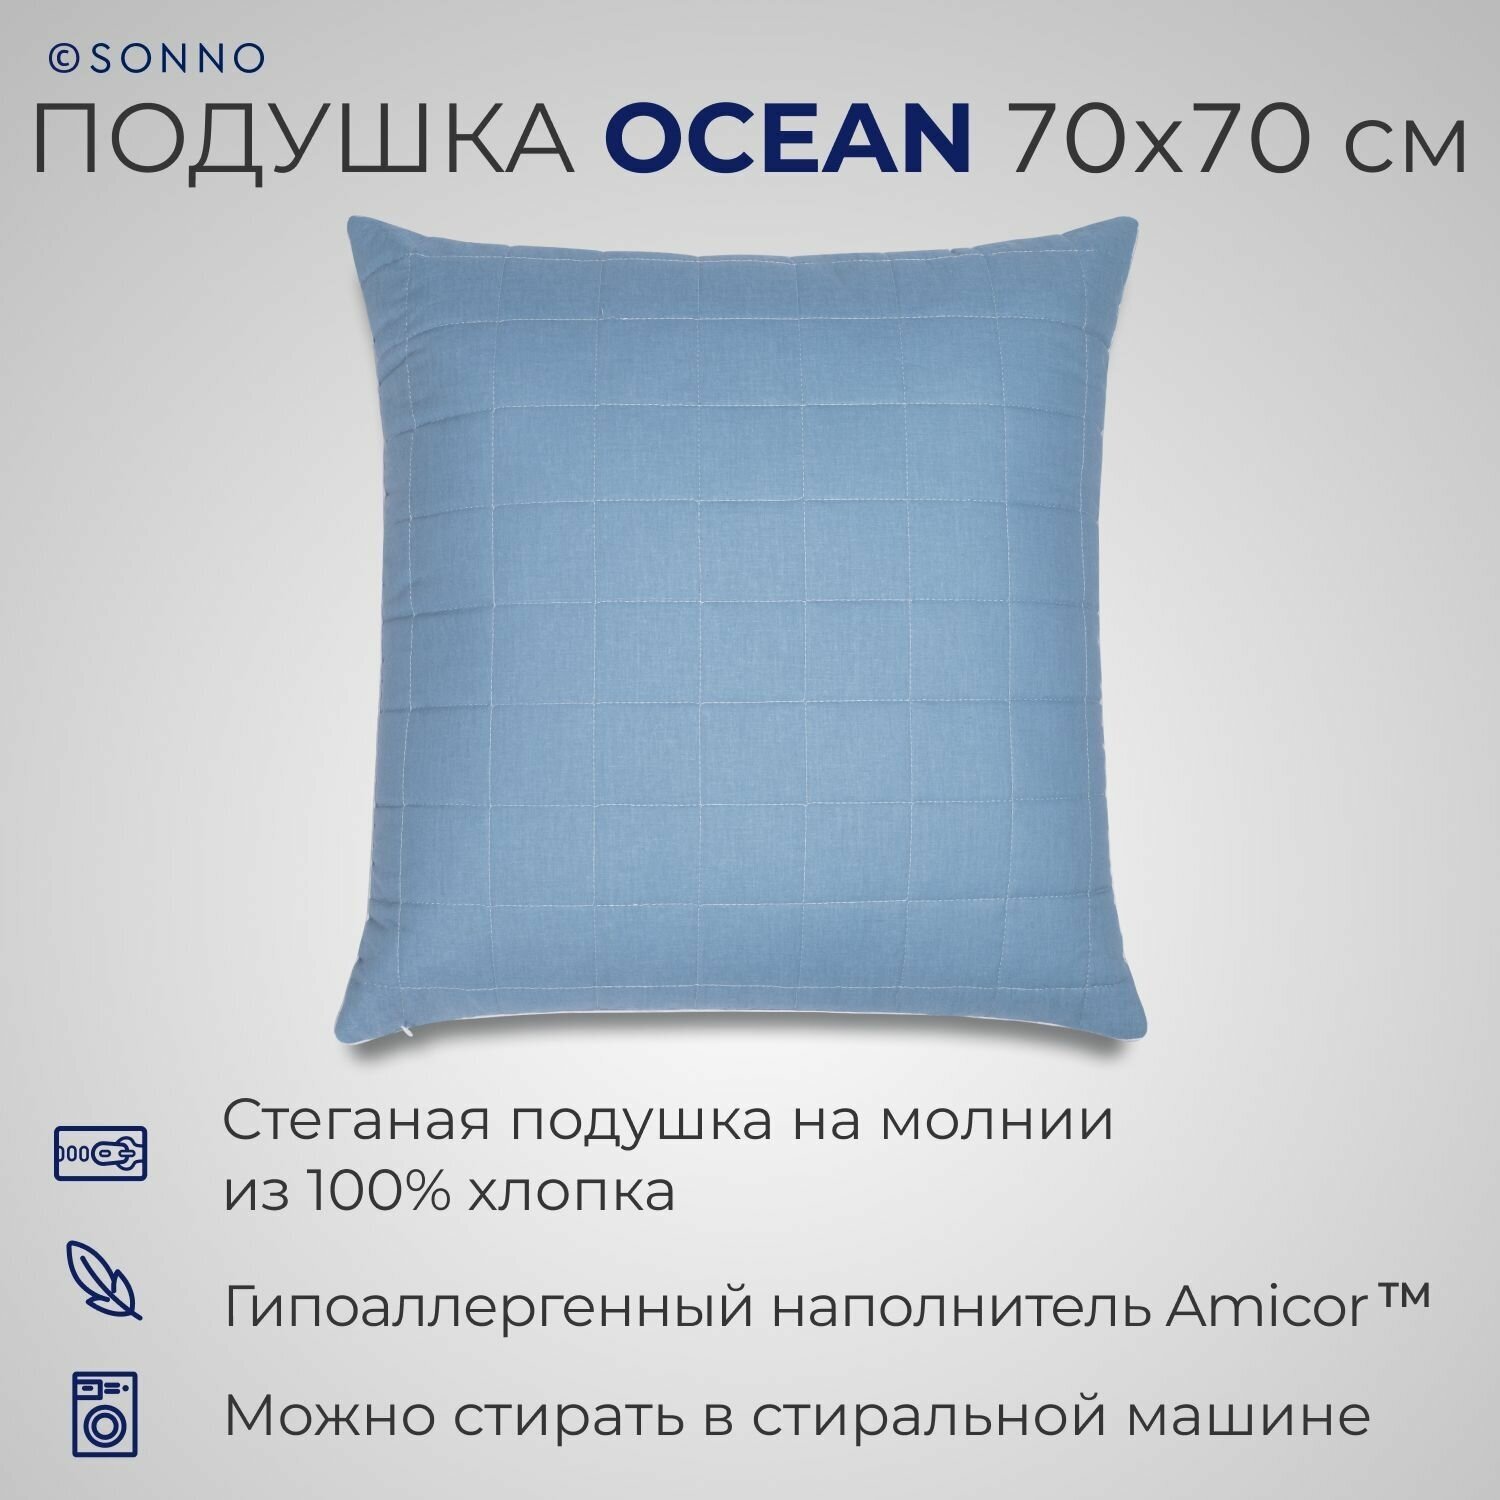 Подушка SONNO OCEAN 70x70 см, гипоаллергенный наполнитель Amicor TM, цвет Океанический голубой